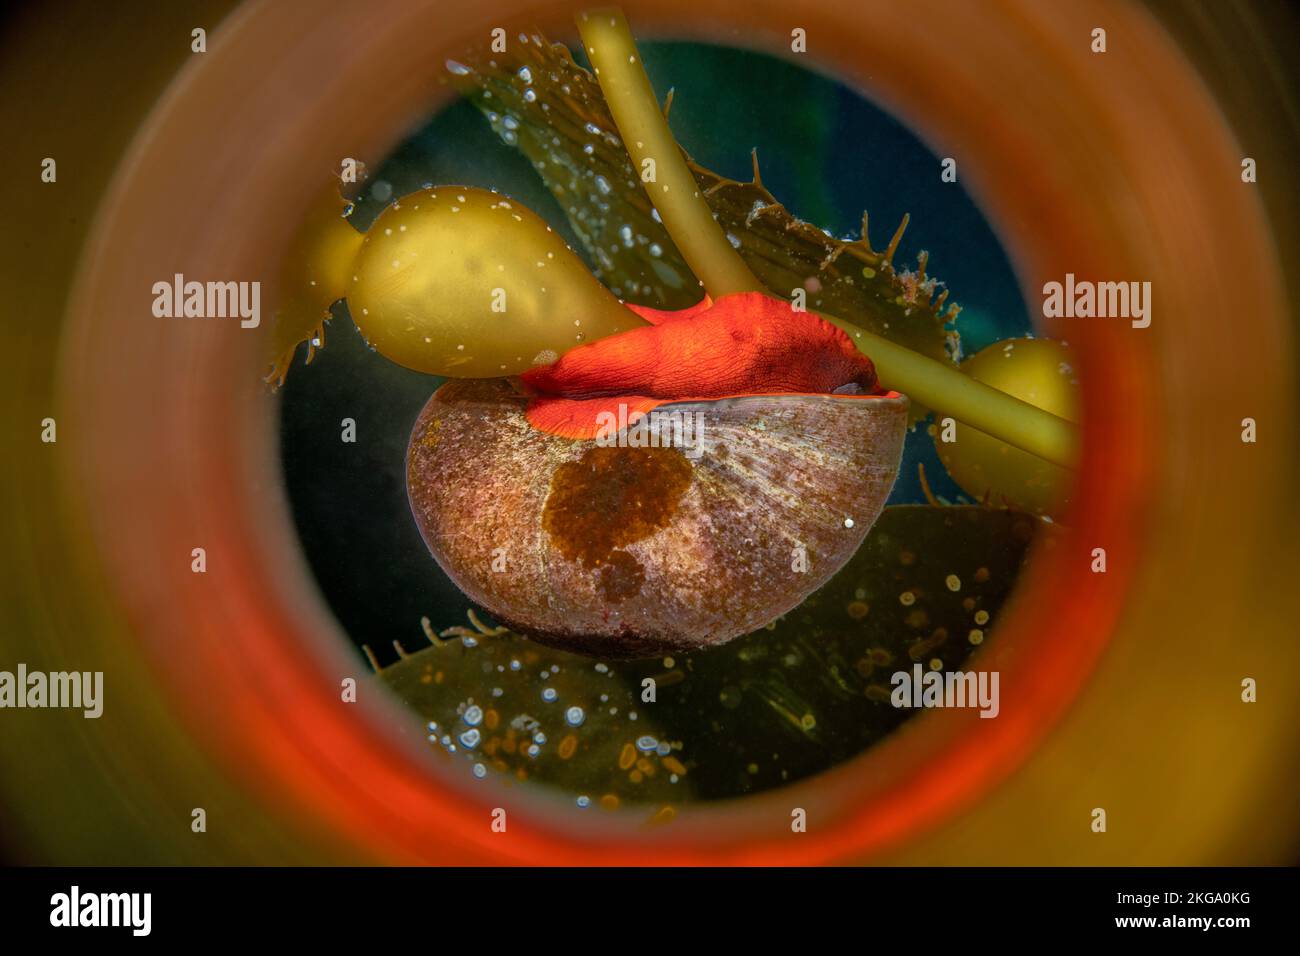 El caracol residente en California, el caracol Norris Top, vive principalmente entre los quelpos y es fácilmente identificado por su brillante pie anaranjado. Foto de stock